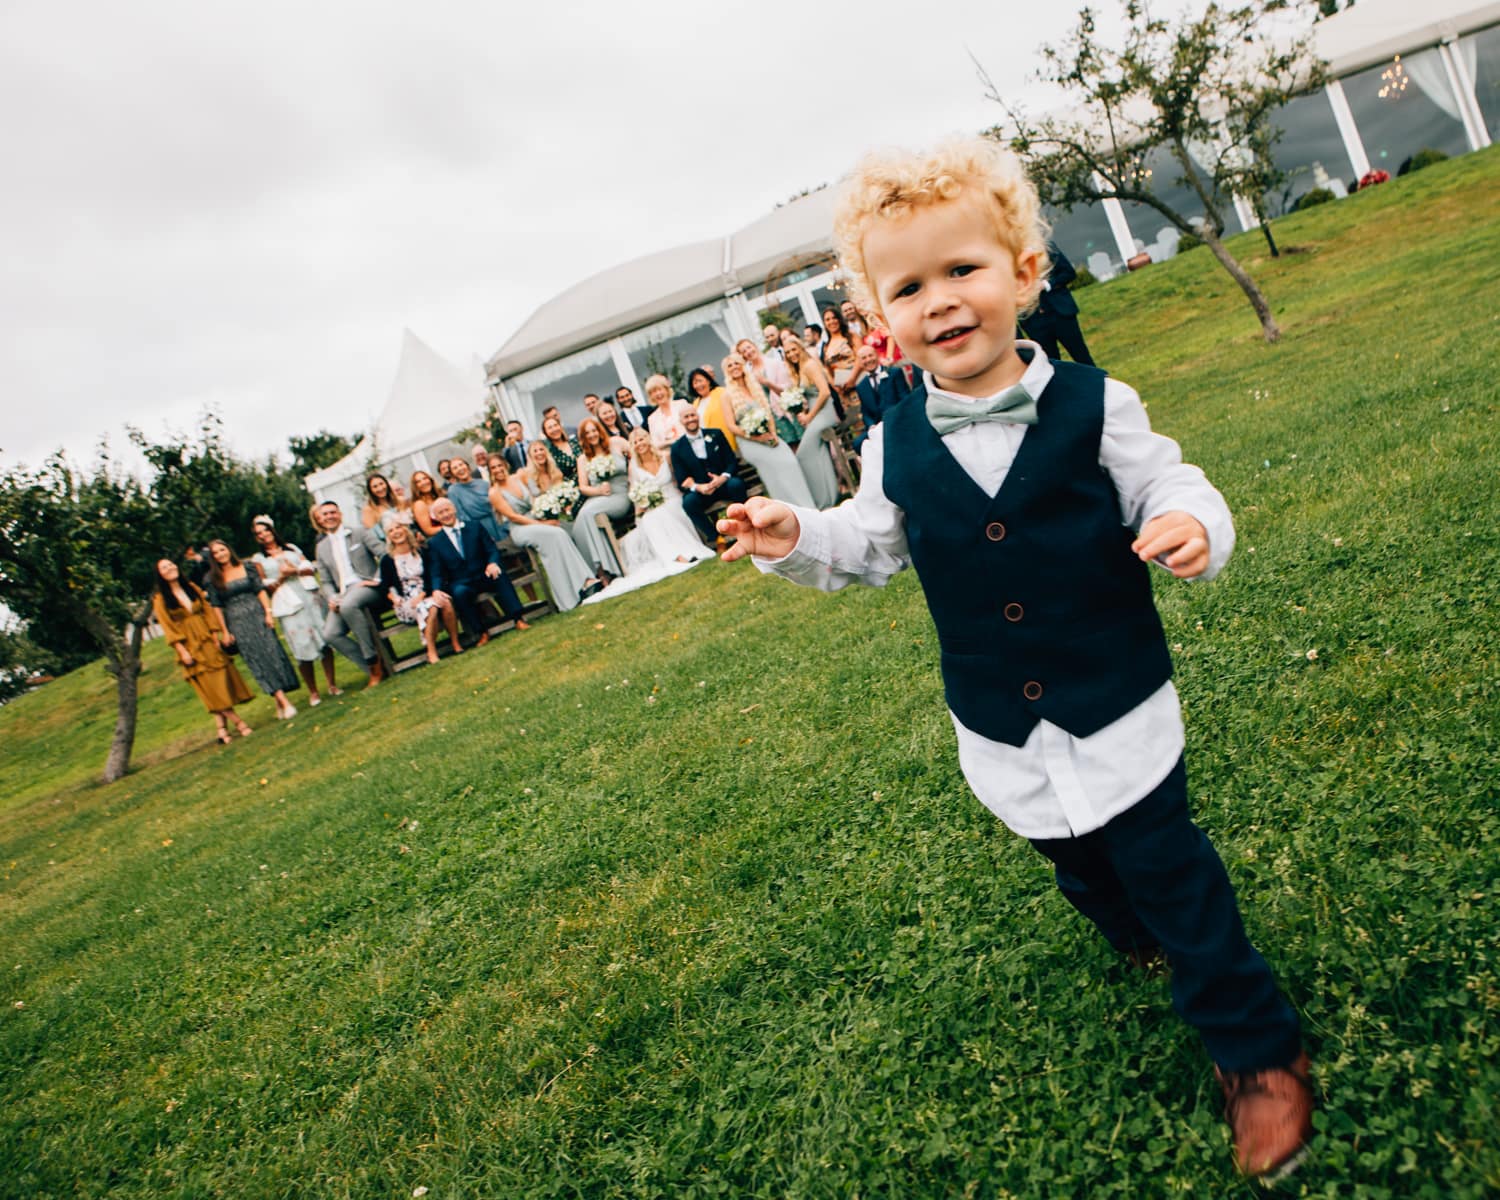 Toddler escaping wedding photos